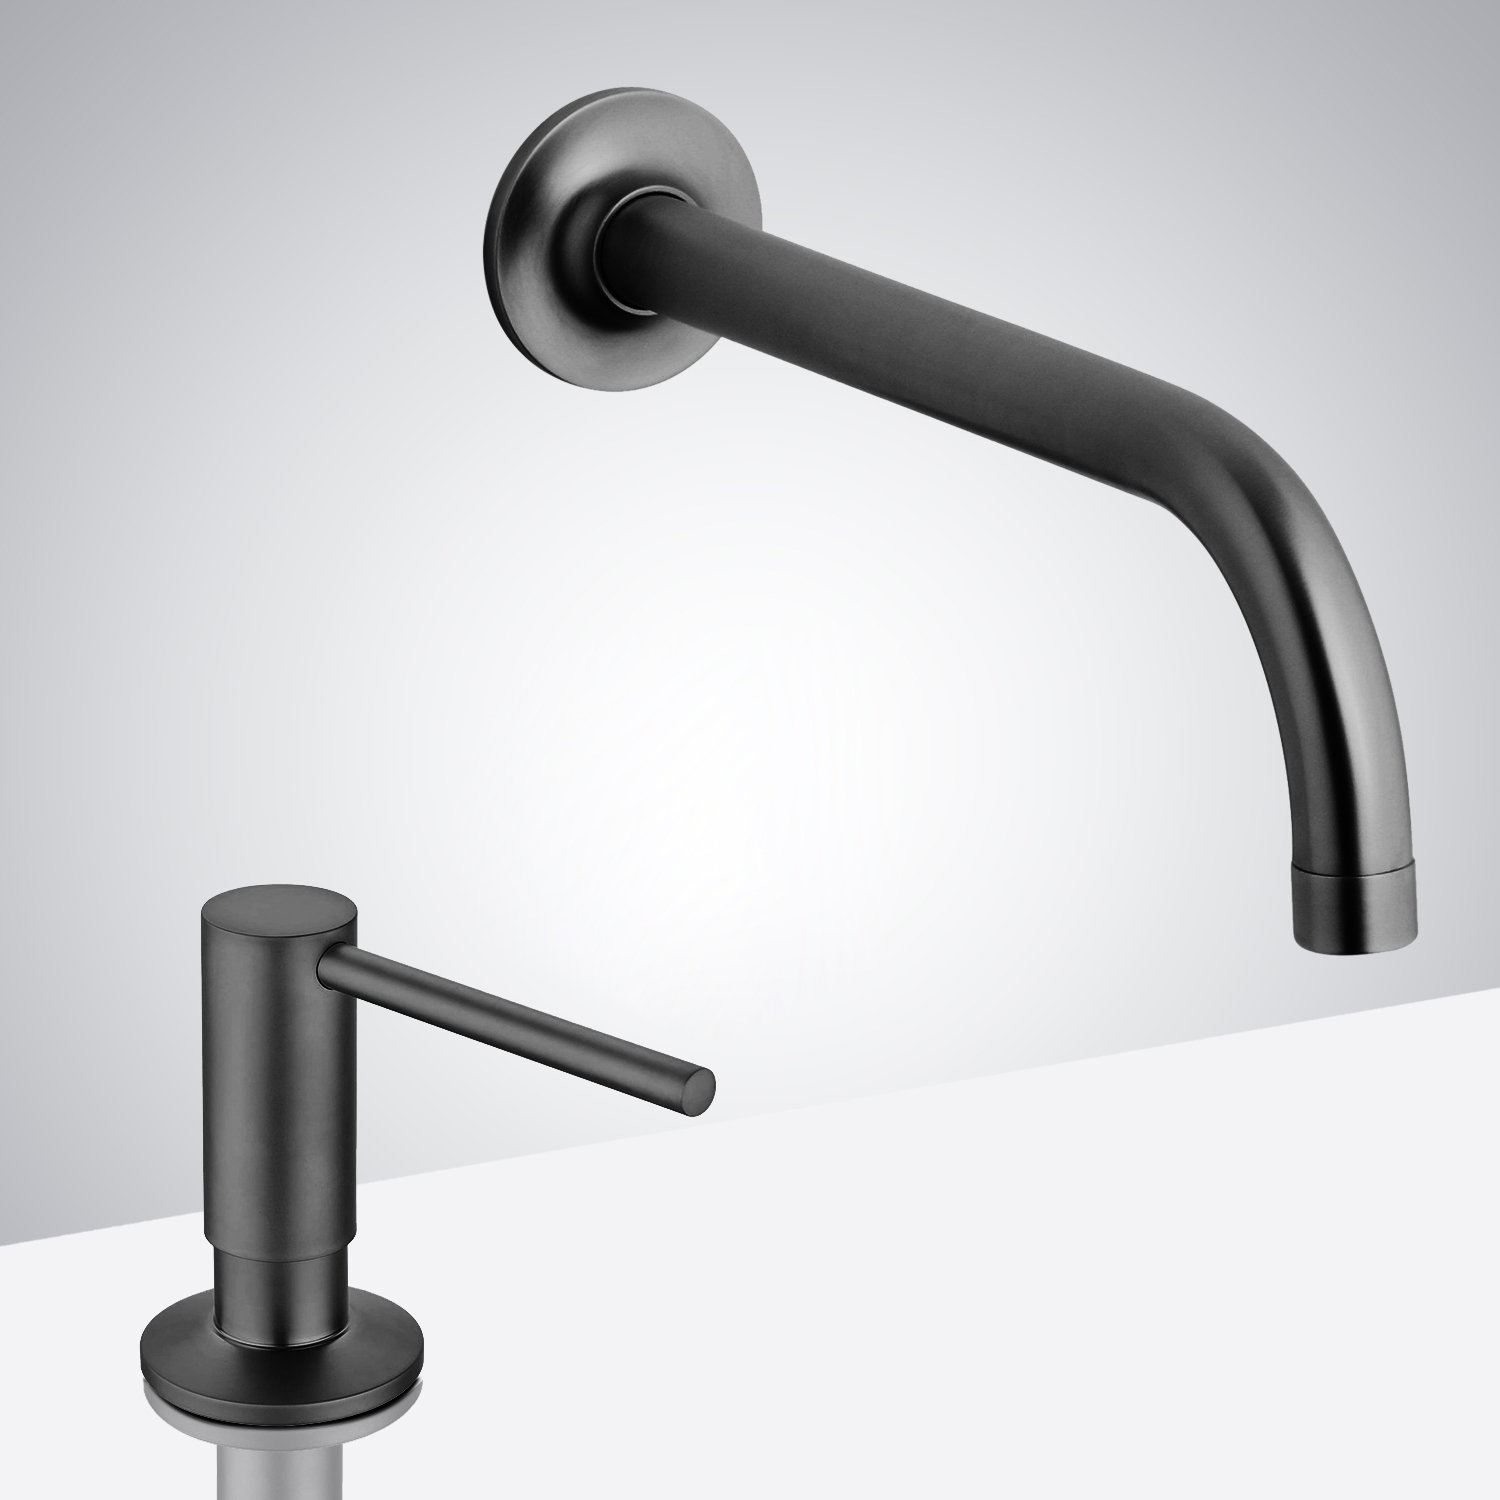 Fontana Commercial Matte Black Touchless Automatic Sensor Faucet & Manual Soap Dispenser